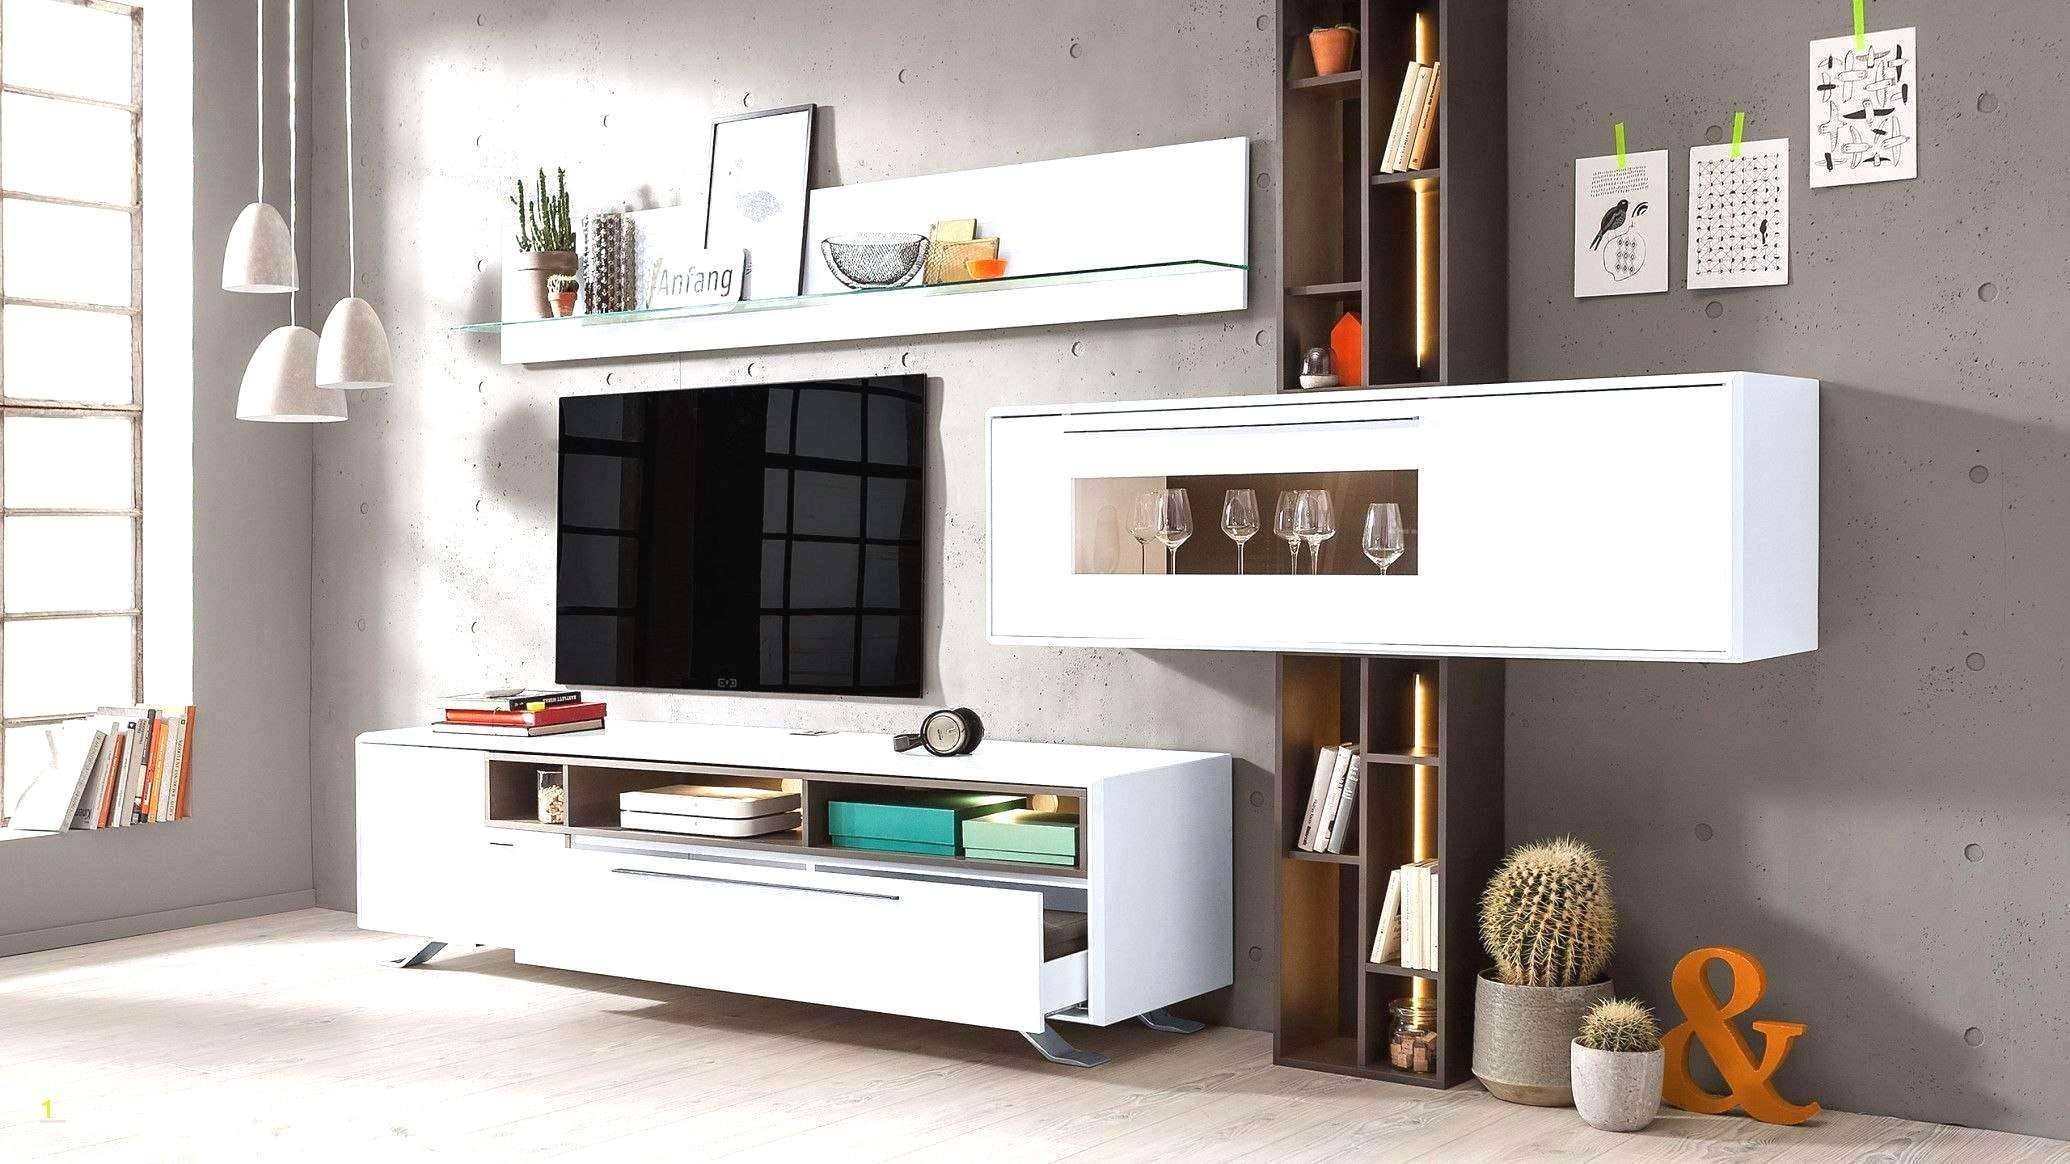 Deko Zum Selber Machen Luxus Luxury Deko Ideen Selbermachen Wohnzimmer Concept